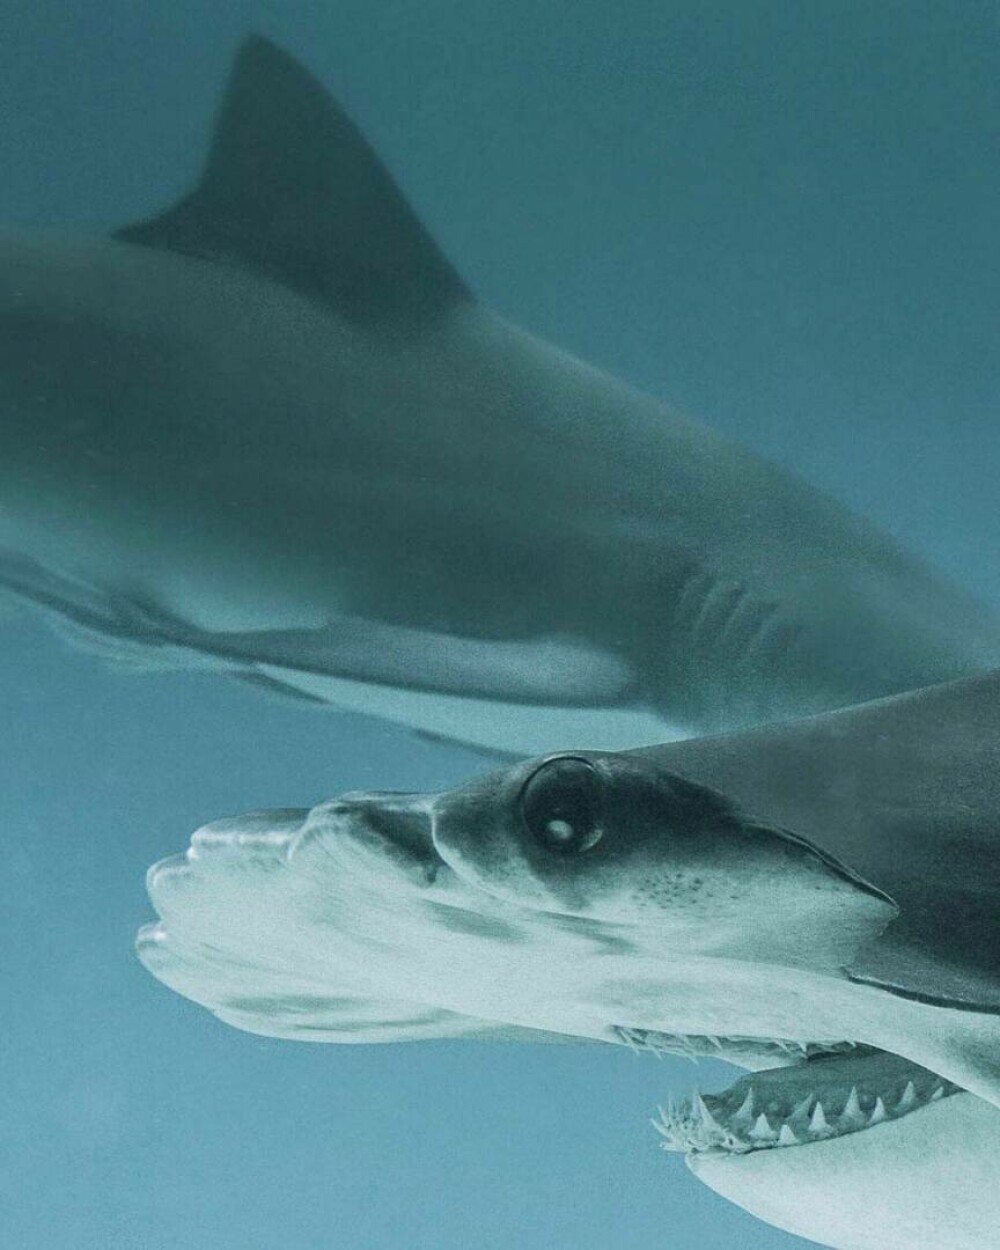 Imagini uimitoare surprinse de supraviețuitorul atacului unui rechin. Fotografiază prădătorii de aproape | GALERIE FOTO - Imaginea 7